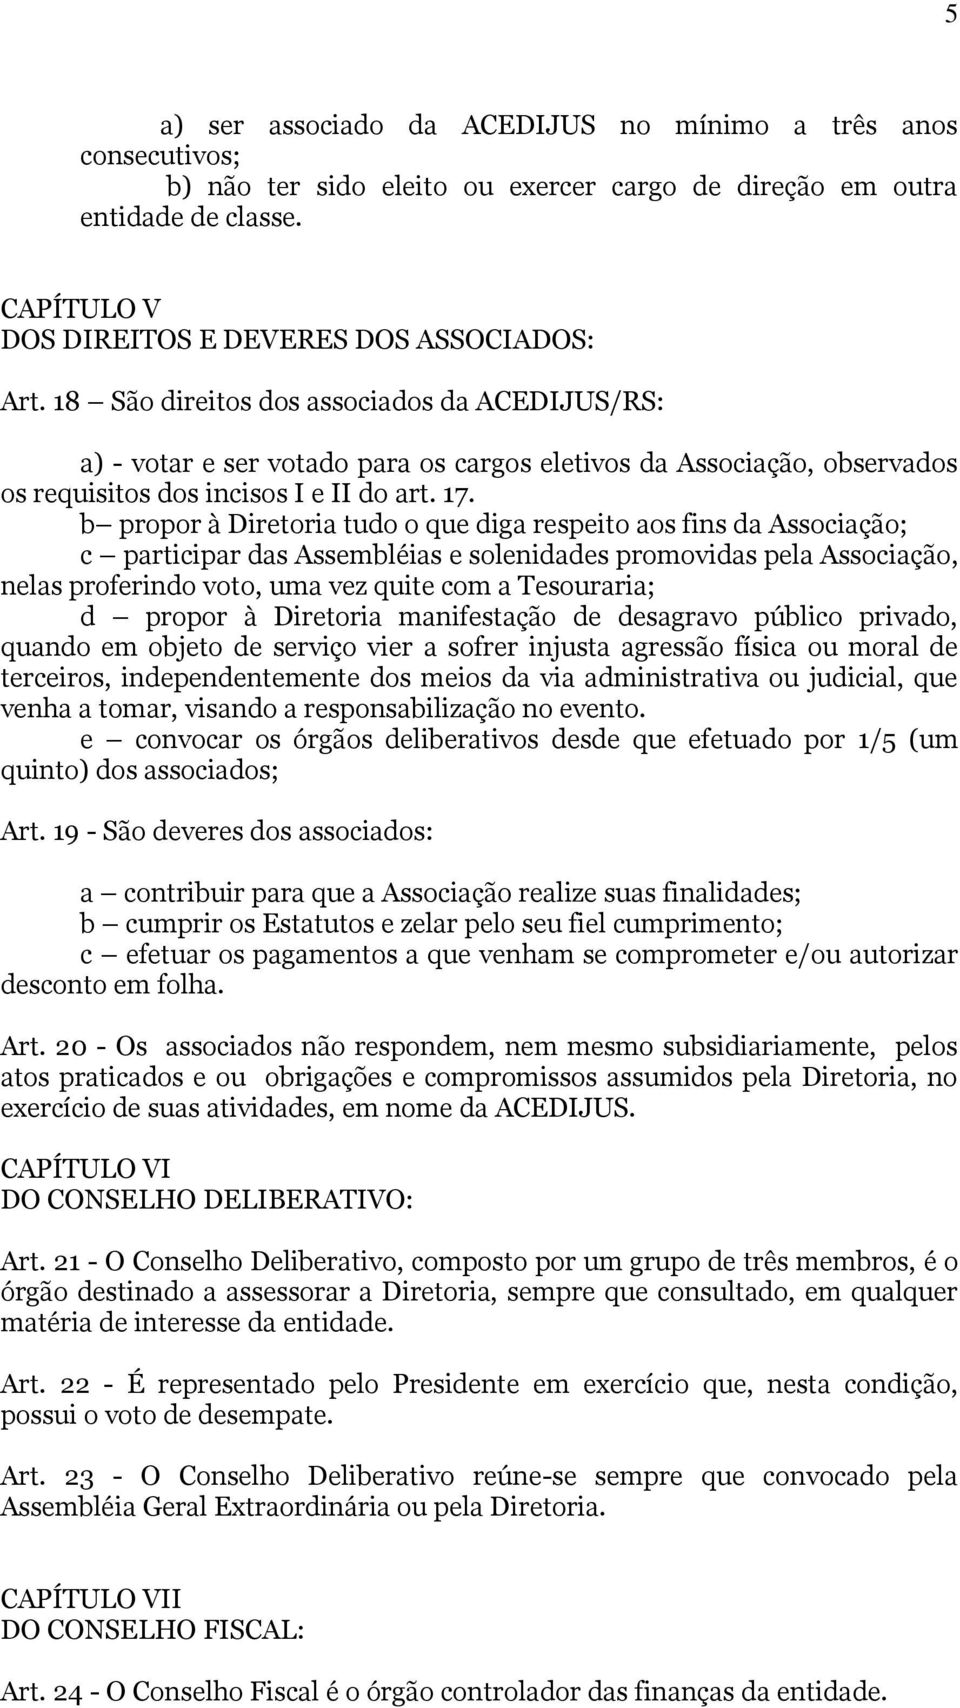 18 São direitos dos associados da ACEDIJUS/RS: a) - votar e ser votado para os cargos eletivos da Associação, observados os requisitos dos incisos I e II do art. 17.